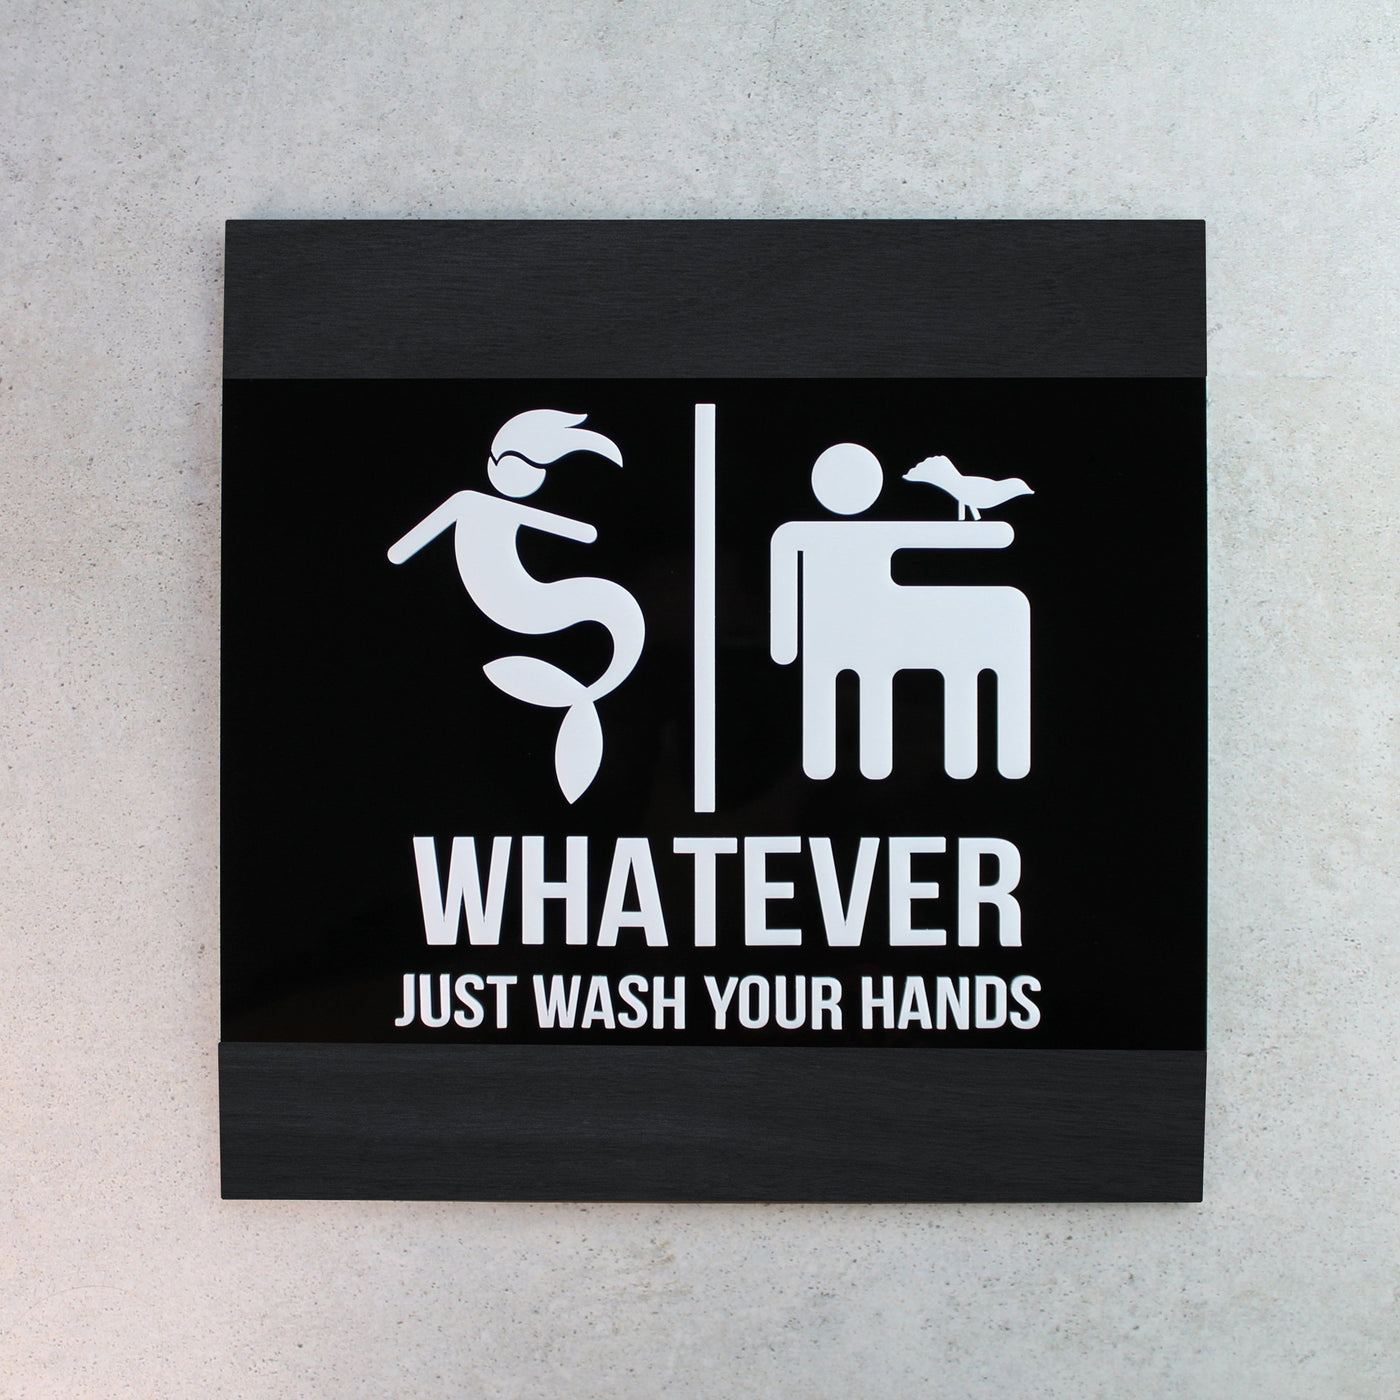 Funny All Gender Restroom Sign "Buro" Design